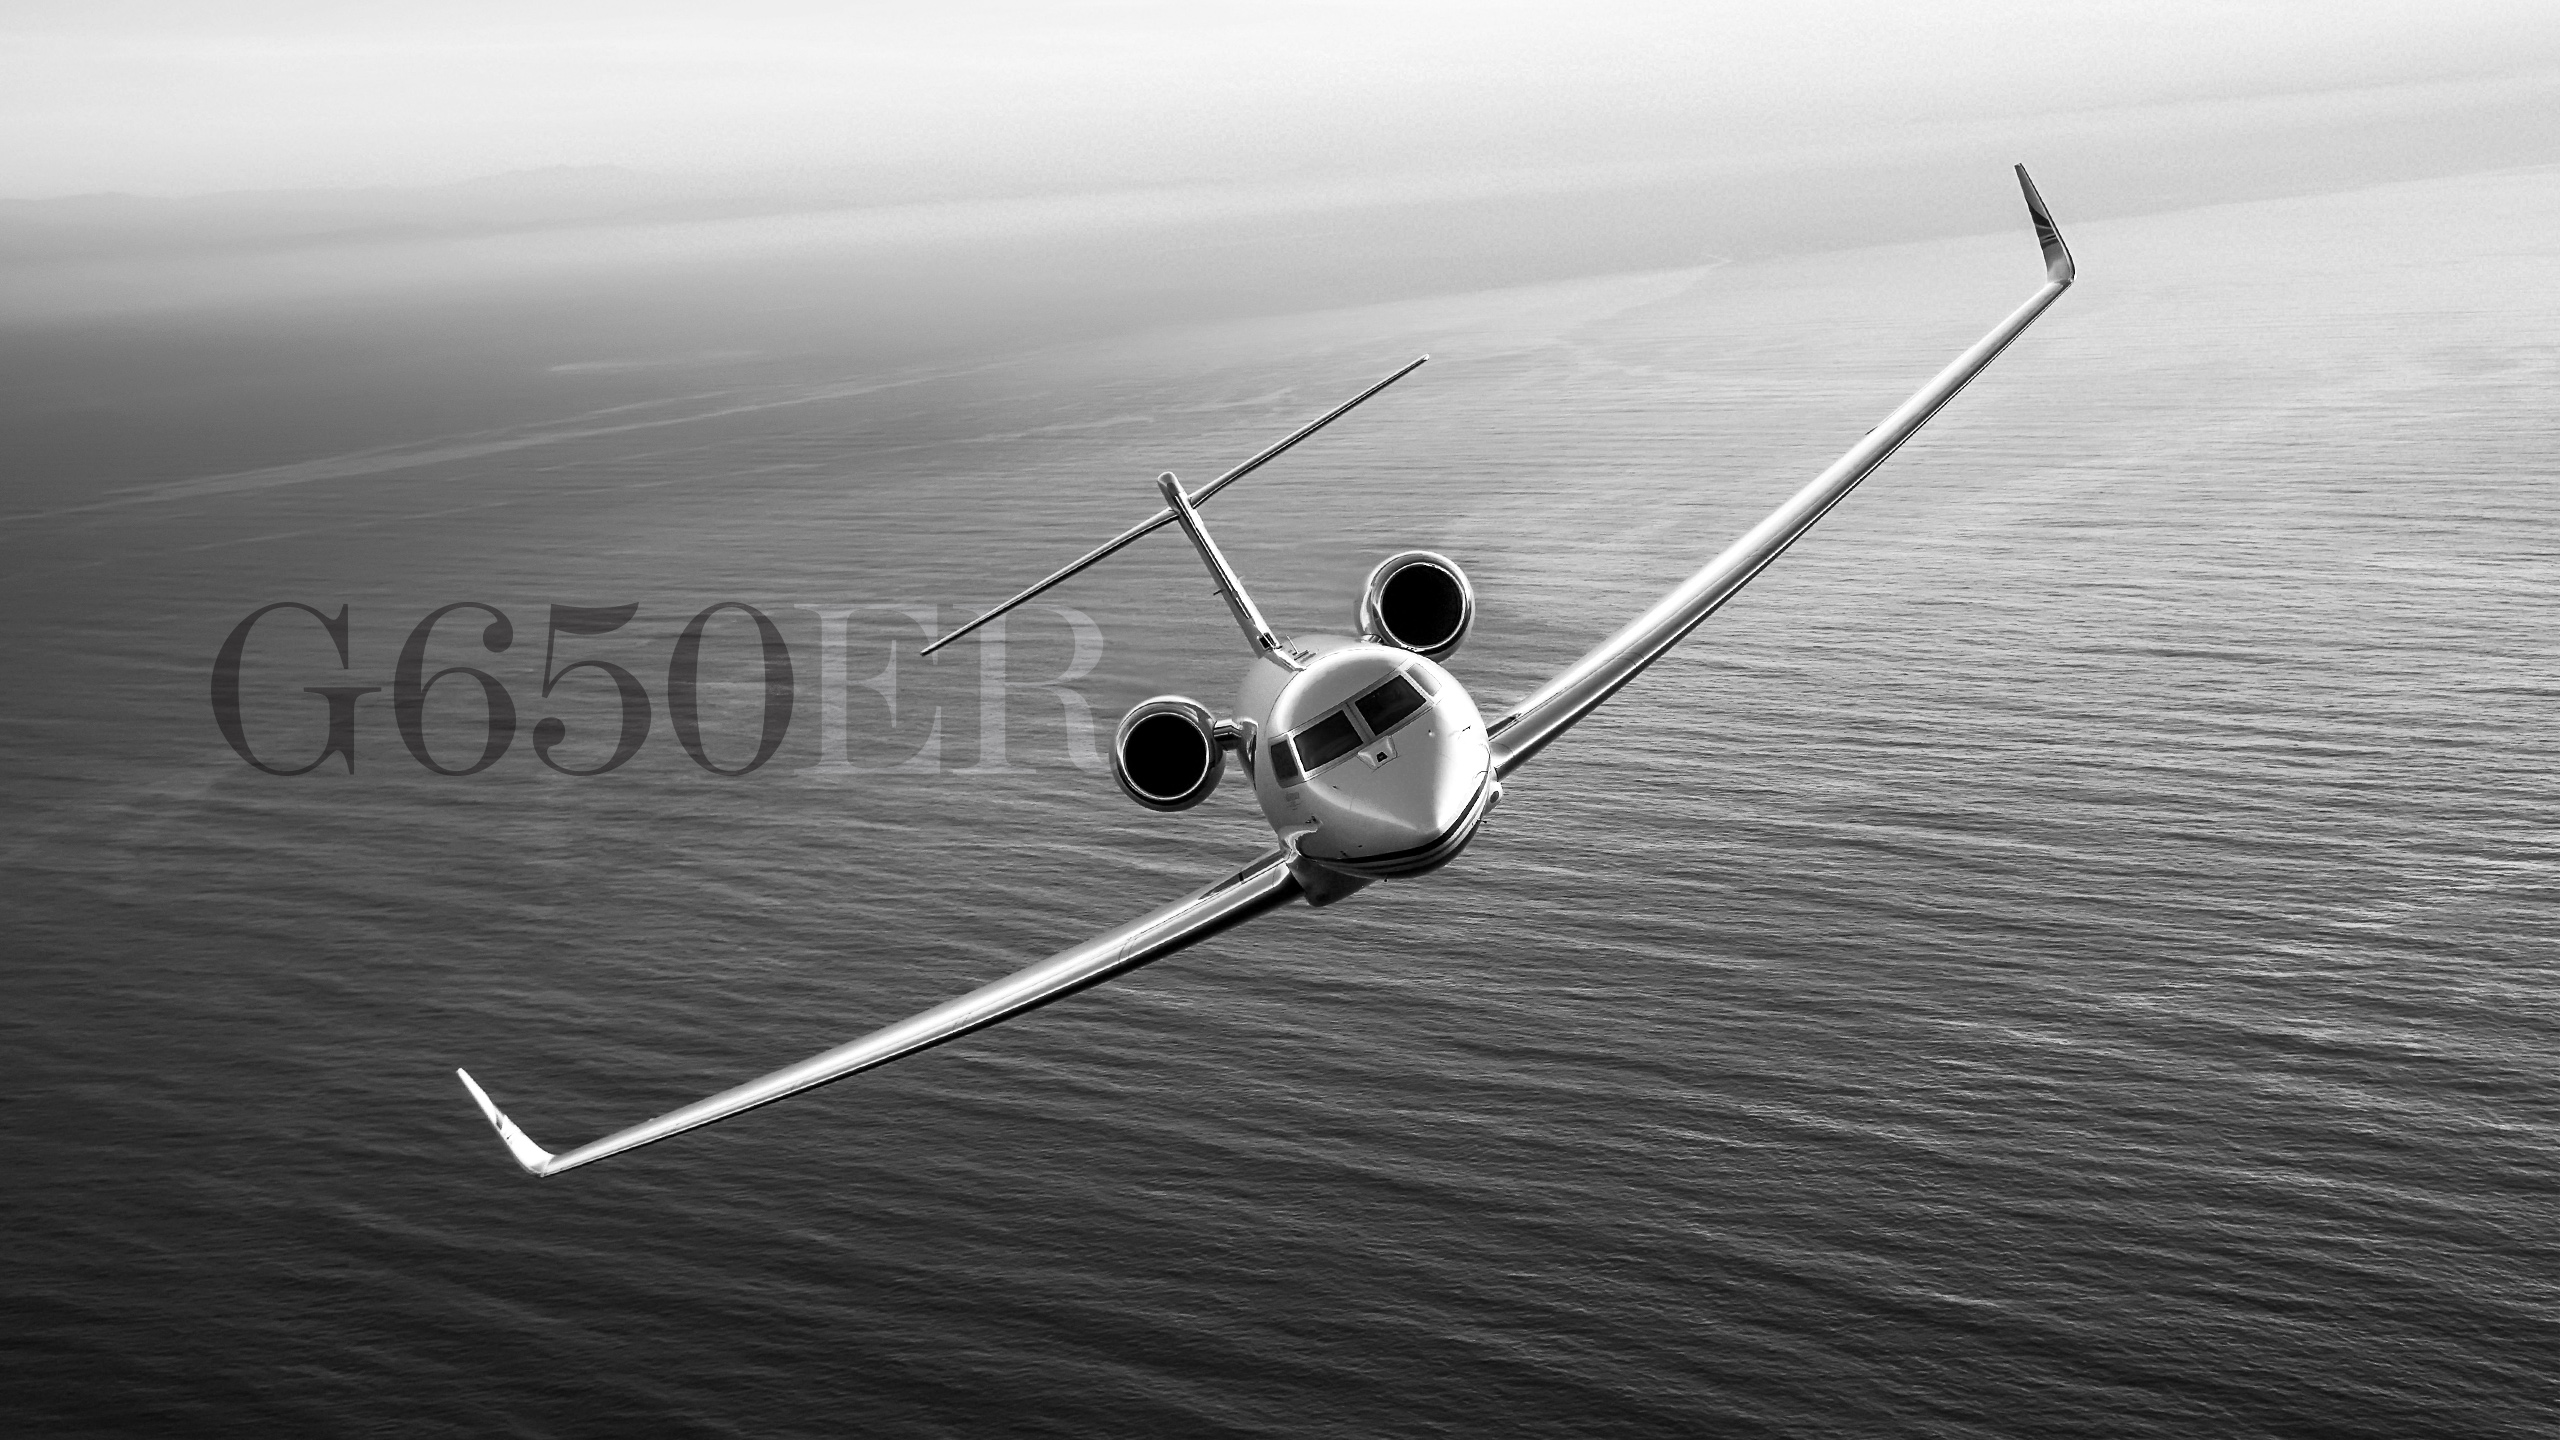 Gulfstream G650er - G650 , HD Wallpaper & Backgrounds